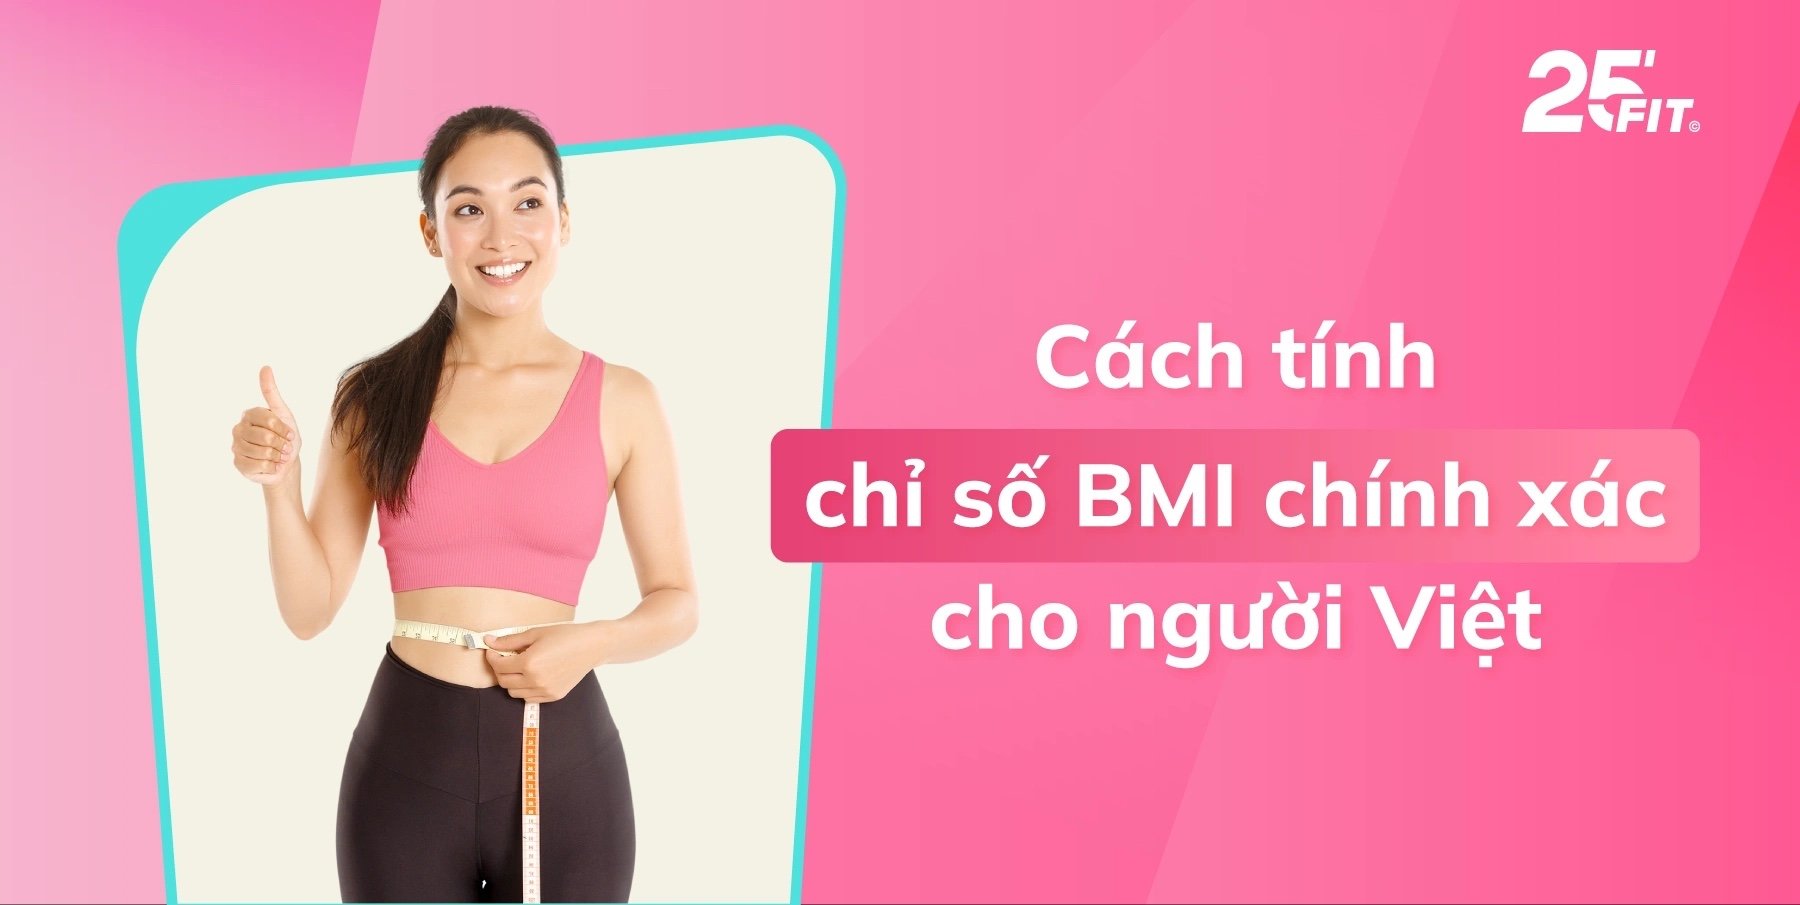 Cách tính chỉ số BMI cho người Việt